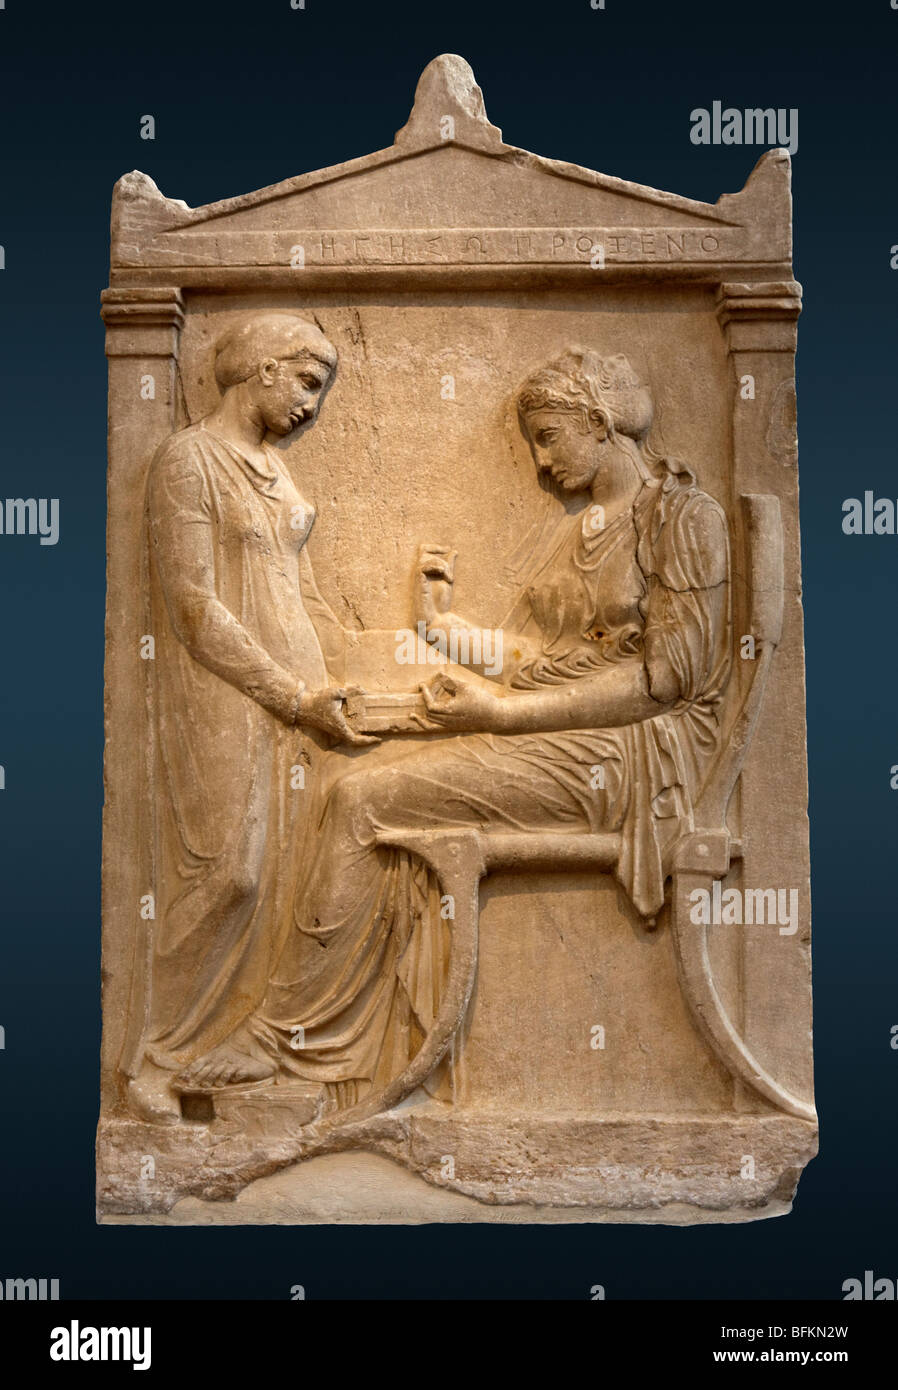 La stèle funéraire d'Hegeso du Kerameikos à Athènes, Grèce. Voir la description pour plus d'informations. Banque D'Images